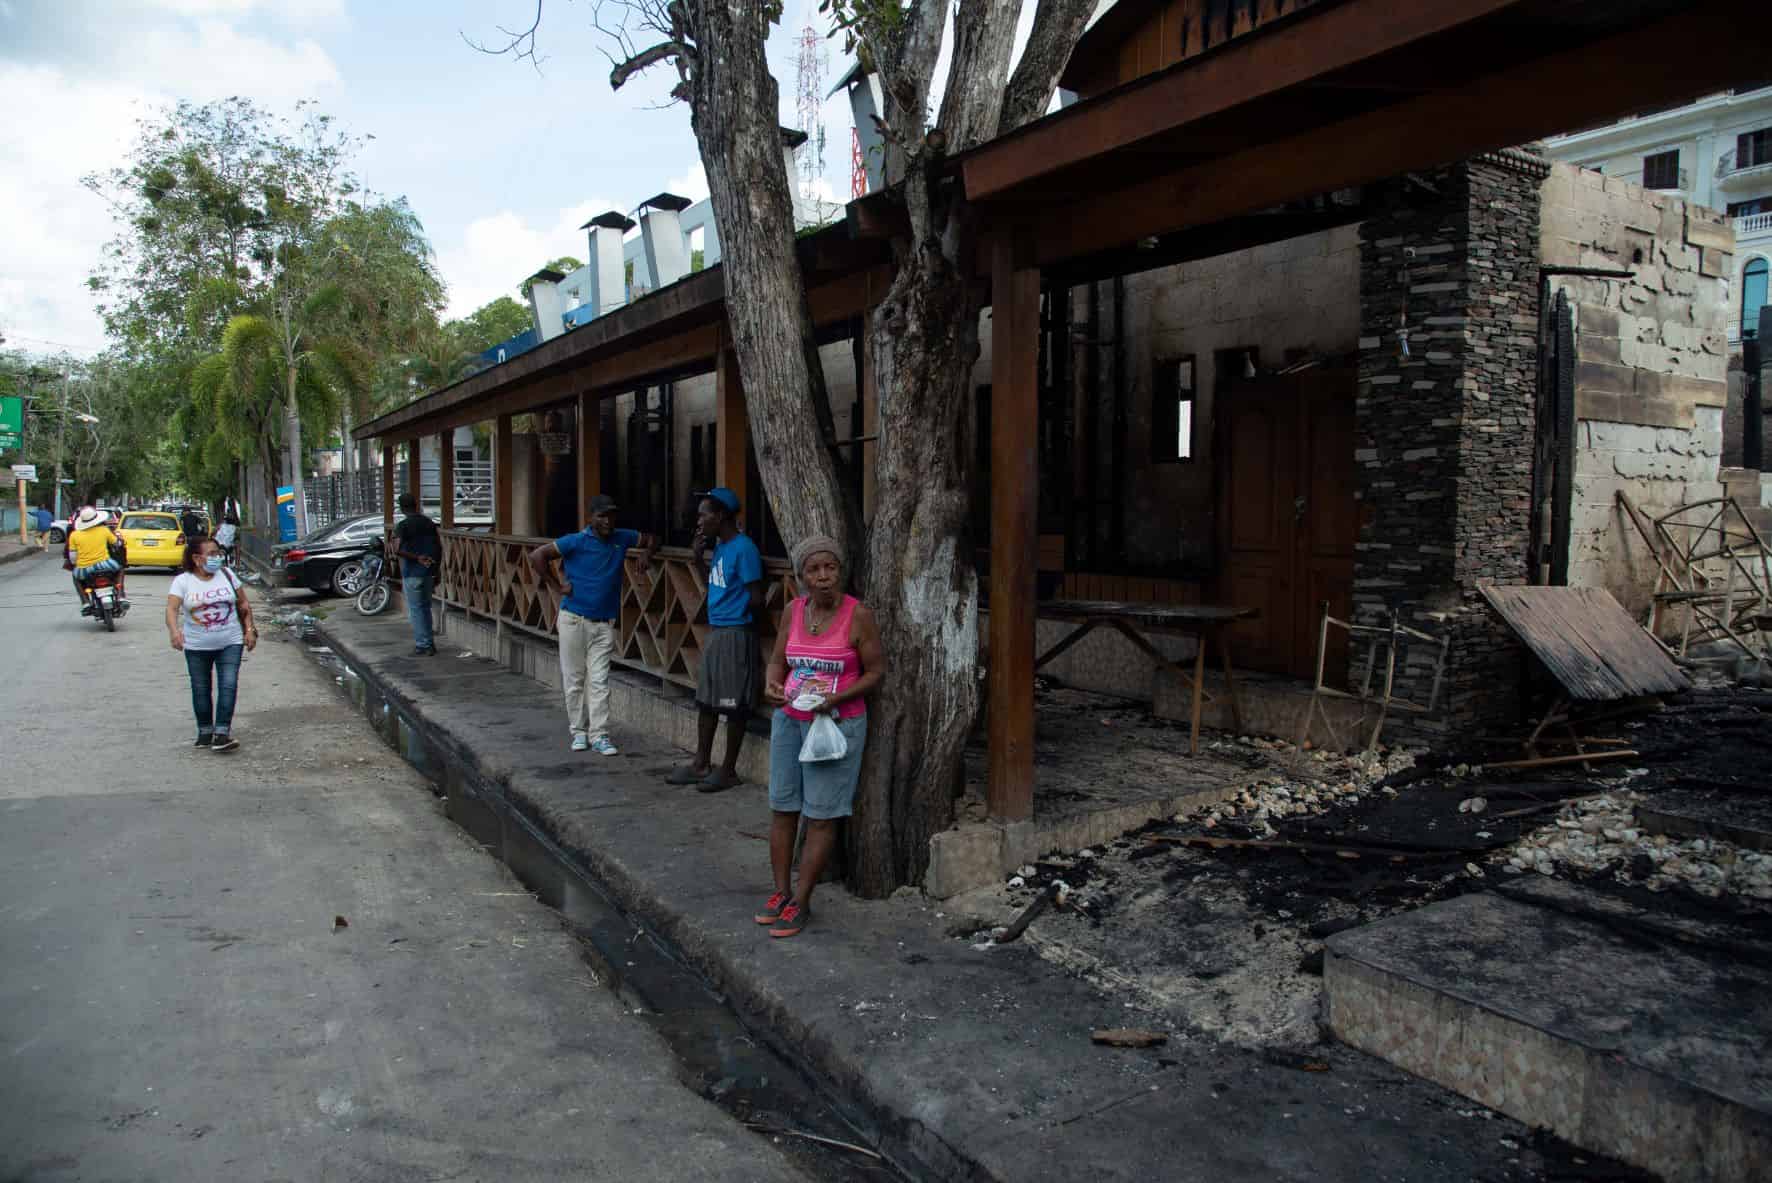 Es primera vez que ocurre un incendio de esa magnitud en esa zona de Boca Chica, dijeron residentes